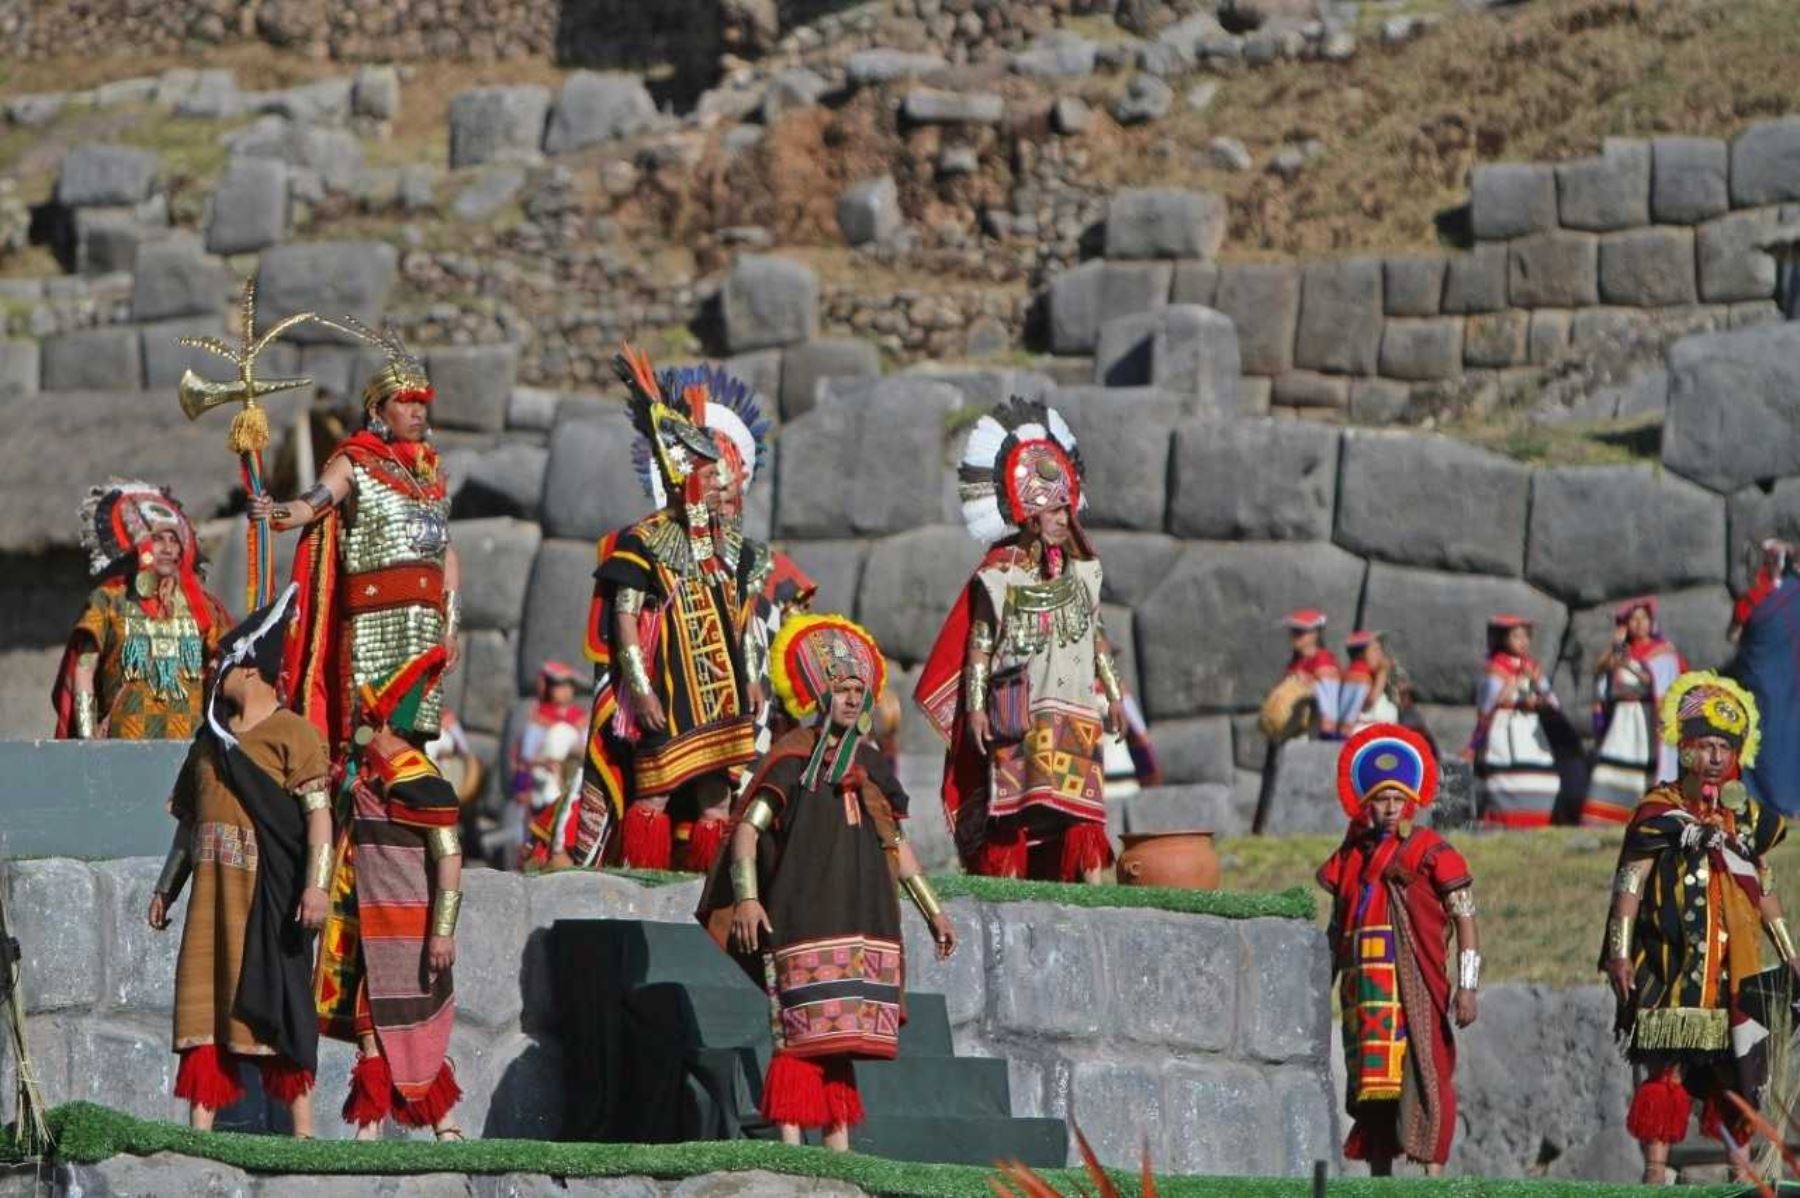 La escenificación del Inti Raymi en la explanada del parque arqueológico Sacsayhuamán, en Cusco, tendrá una duración de 80 minutos. Foto: ANDINA/Percy Hurtado Santillán.